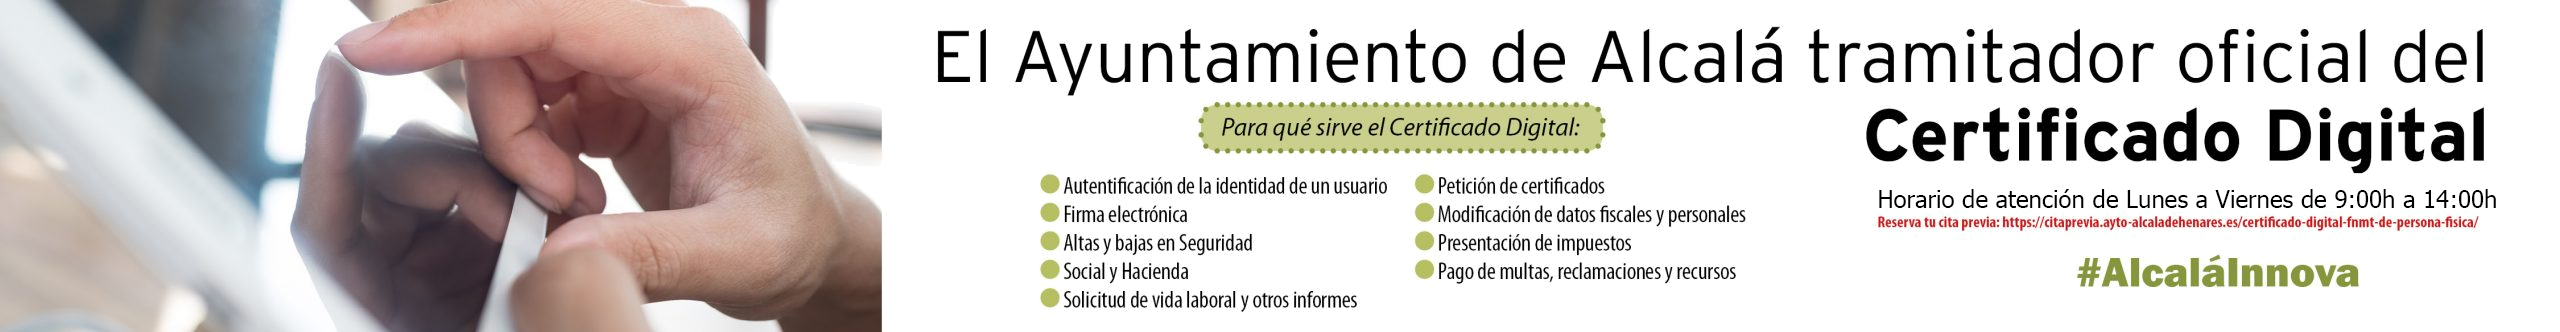 El Ayuntamiento de Alcalá tramitador oficial del Certificado Digital